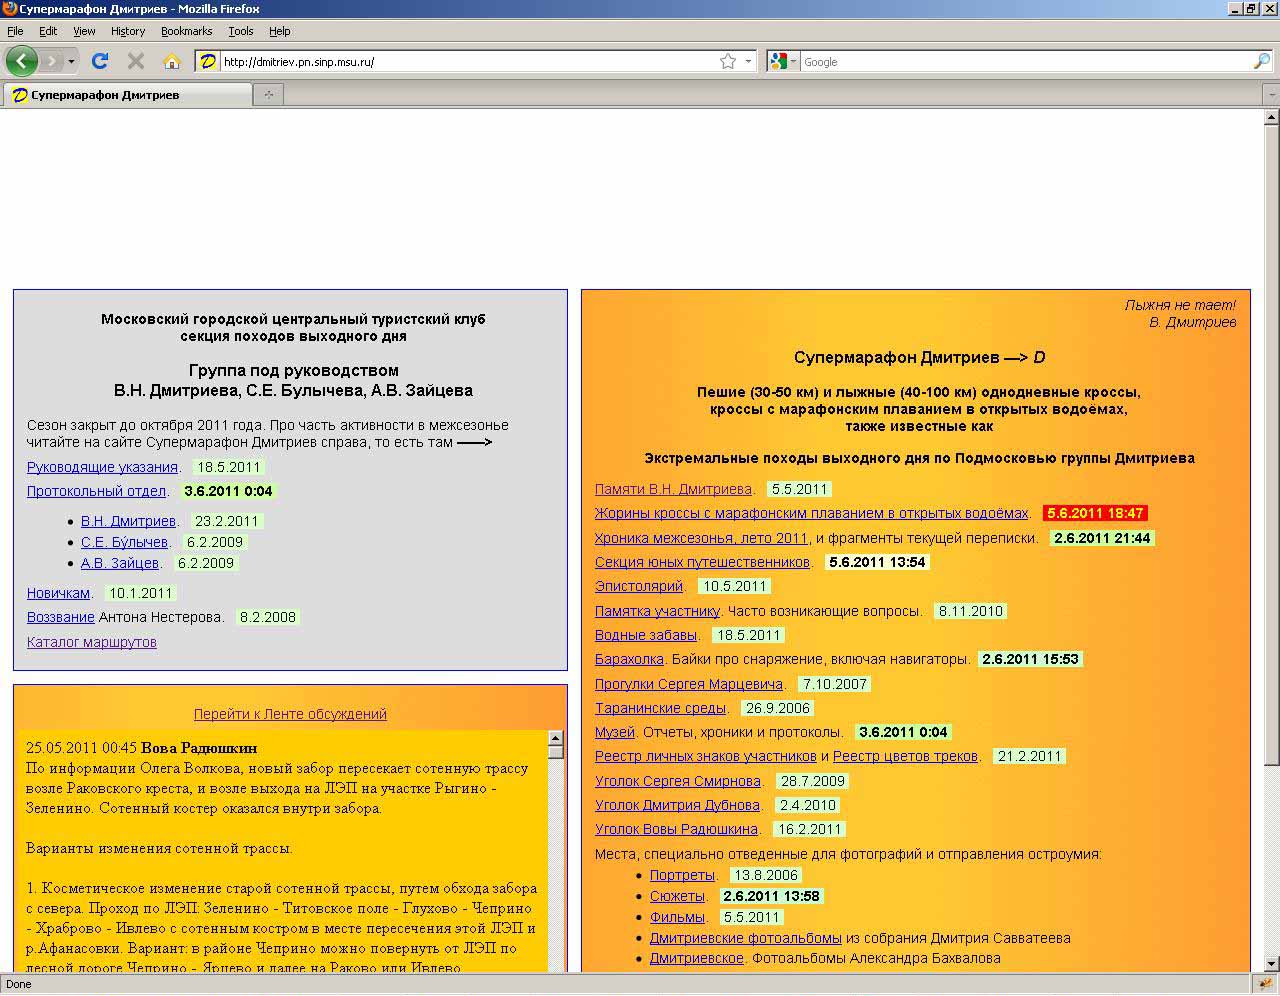 Оглавление сайта в броузере Firefox с разрешенным ЯваСкриптом